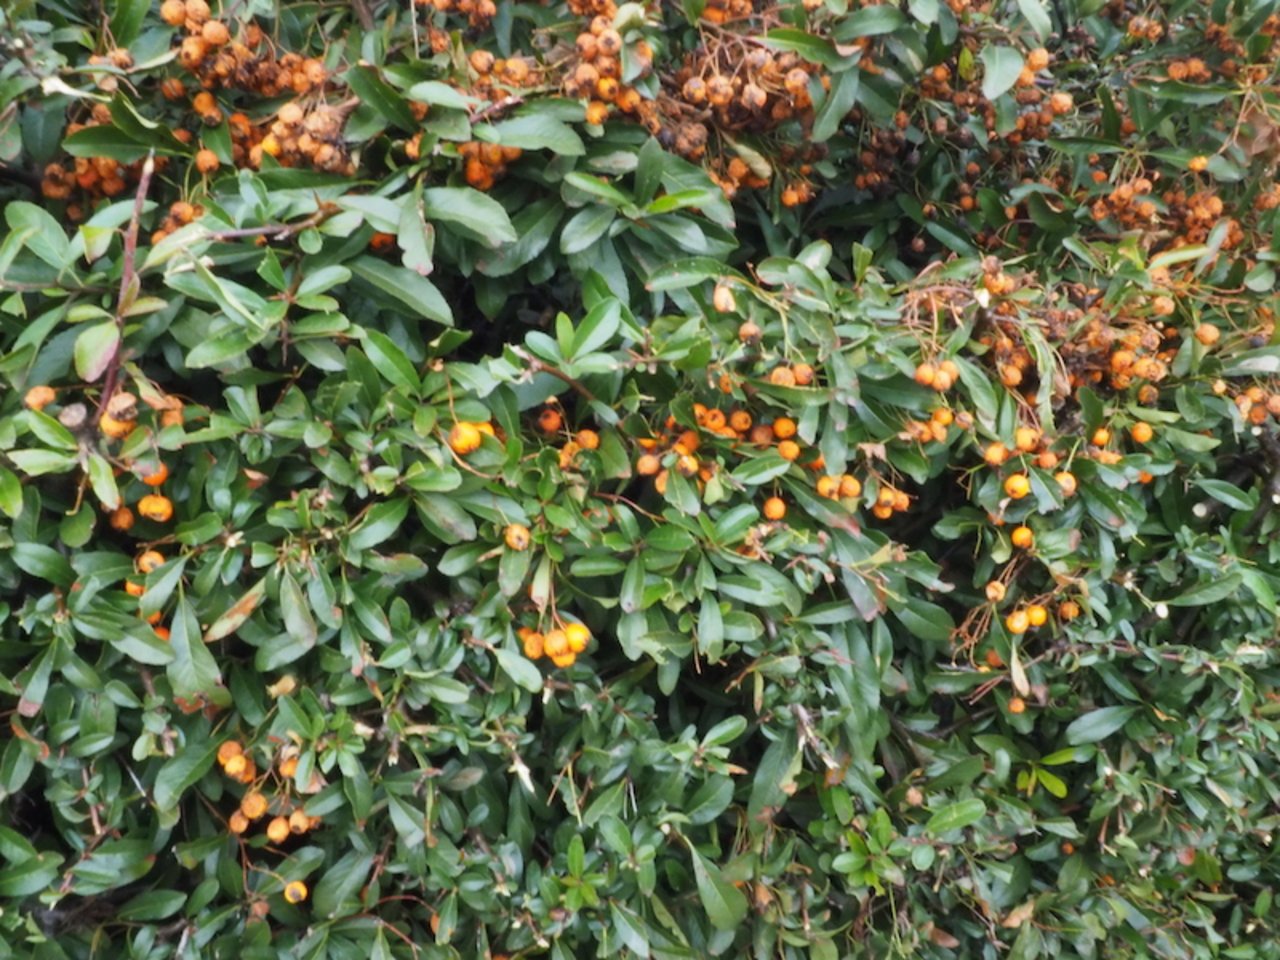 Orangeroten Fruchtschmuck zeichnet den immergrünen Feuerdorn Pyracantha aus.